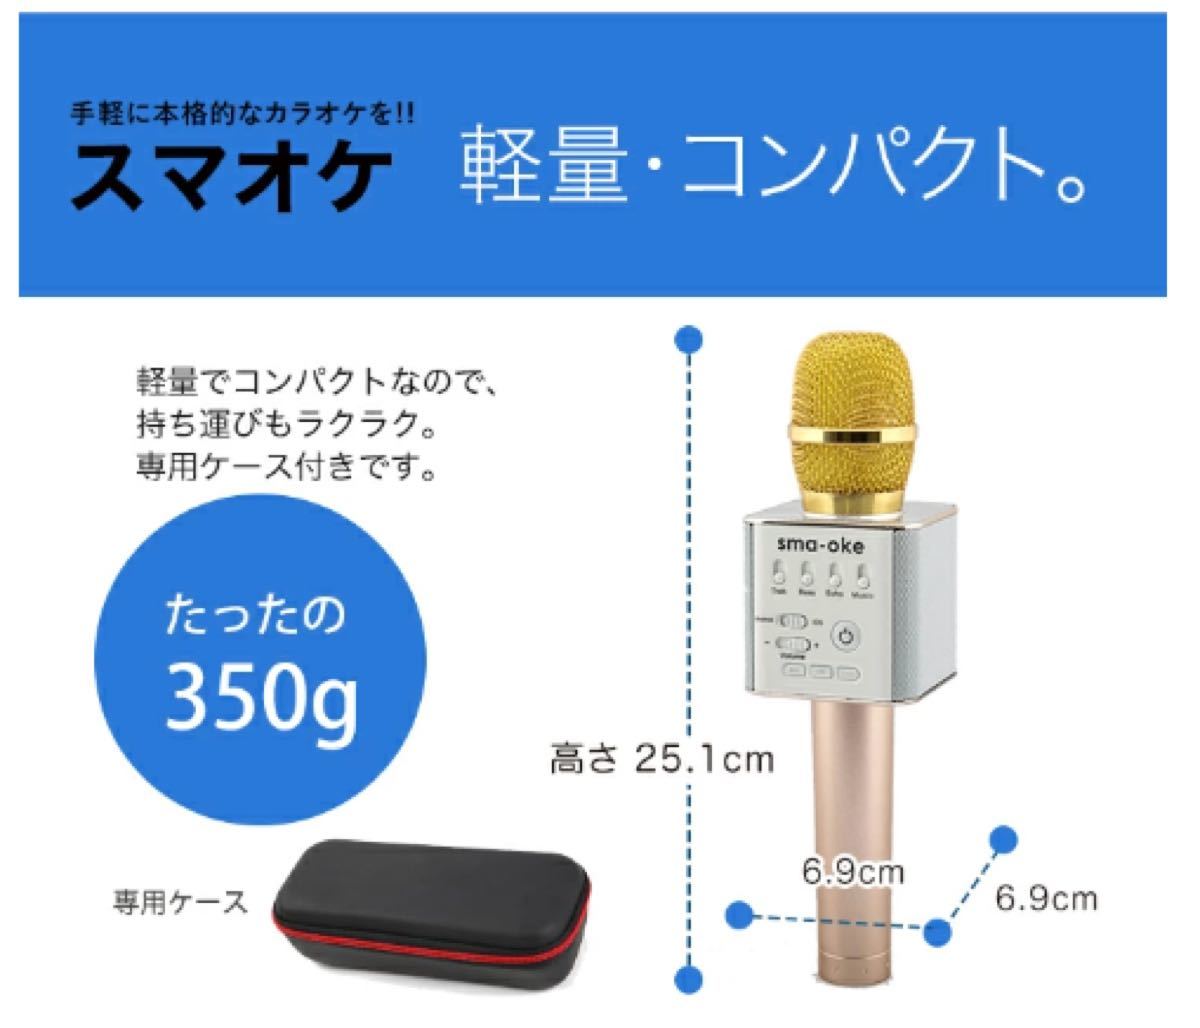 【新品未使用】スマオケ スマホカラオケ マイクスピーカー コードレス Bluetooth